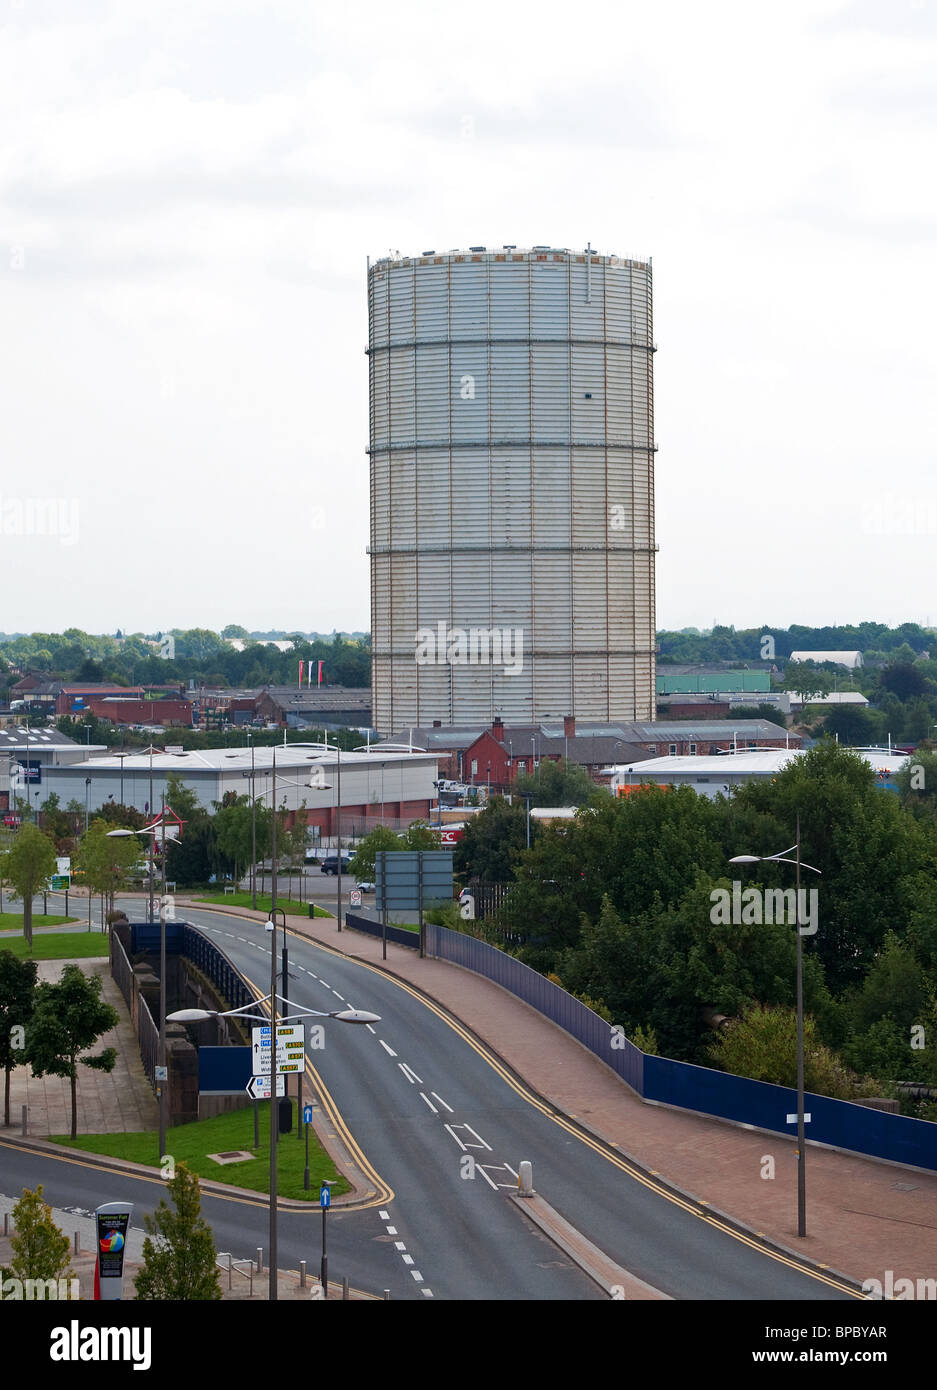 ein Gasometer am Rande des Stadtzentrums in Nürnberg, Lancashire, uk Stockfoto